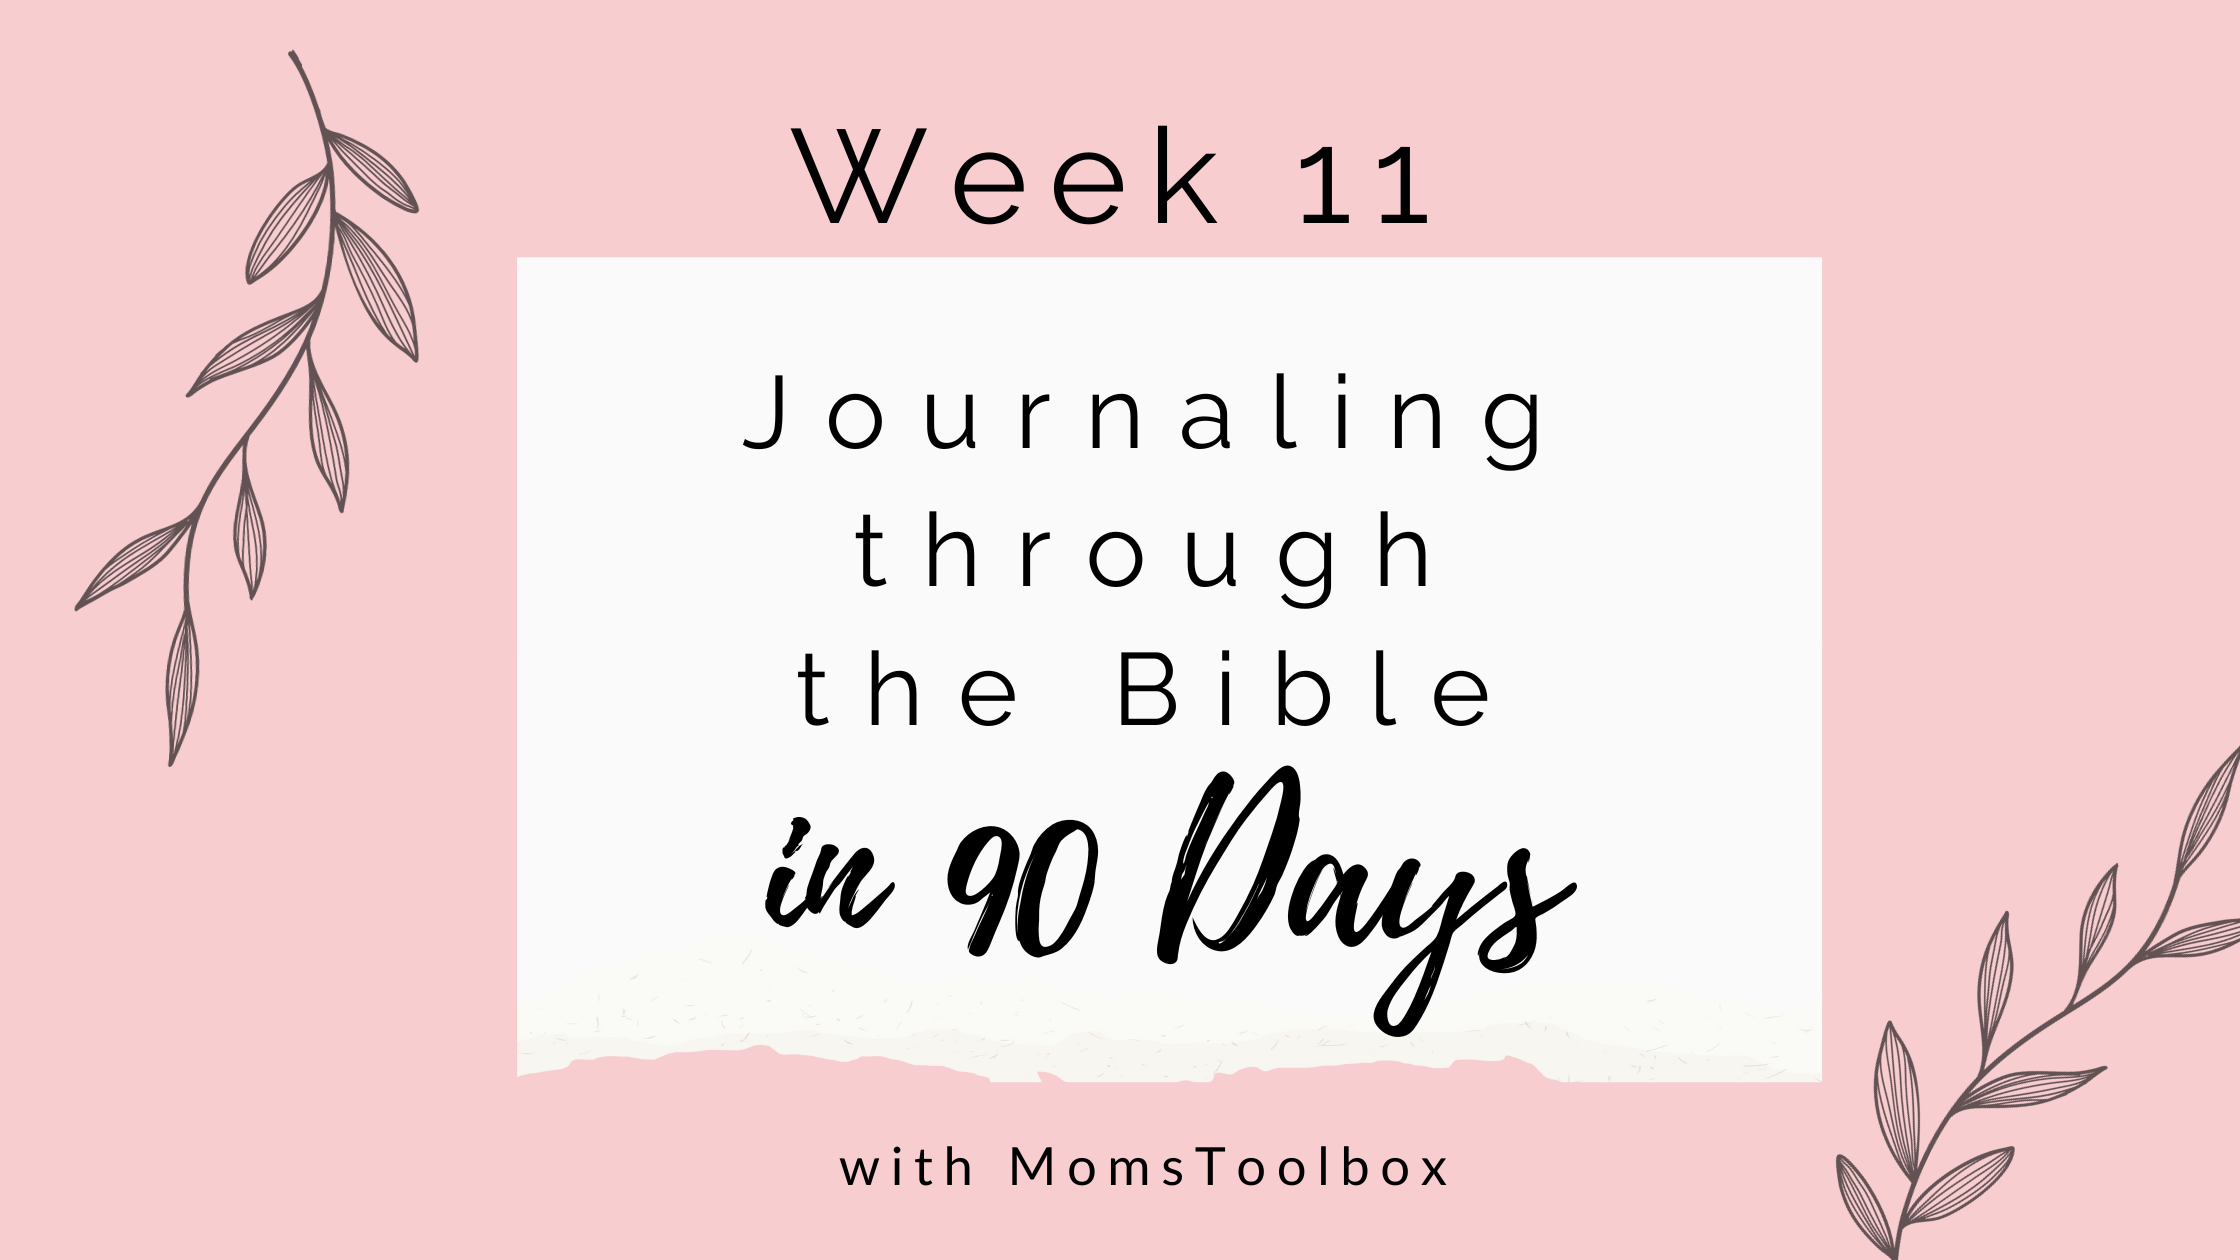 Journaling through the Bible in 90 days: Week 11!